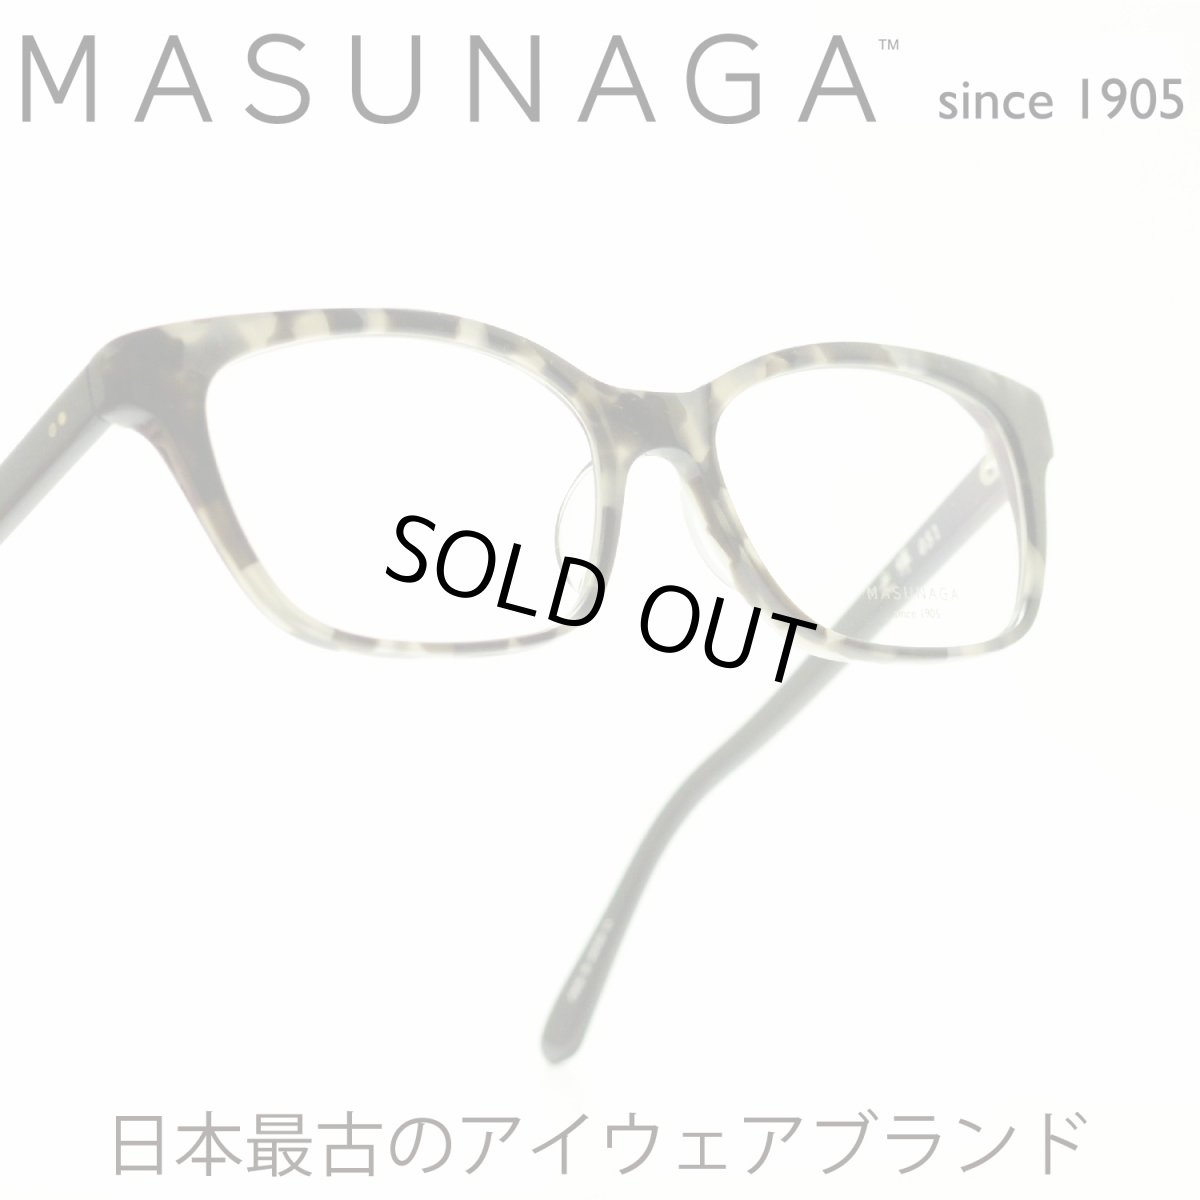 画像1: 増永眼鏡 MASUNAGA 光輝 051 col-34 GRY TORTOISE メガネ 眼鏡 めがね メンズ レディース おしゃれ ブランド 人気 おすすめ フレーム 流行り 度付き レンズ (1)